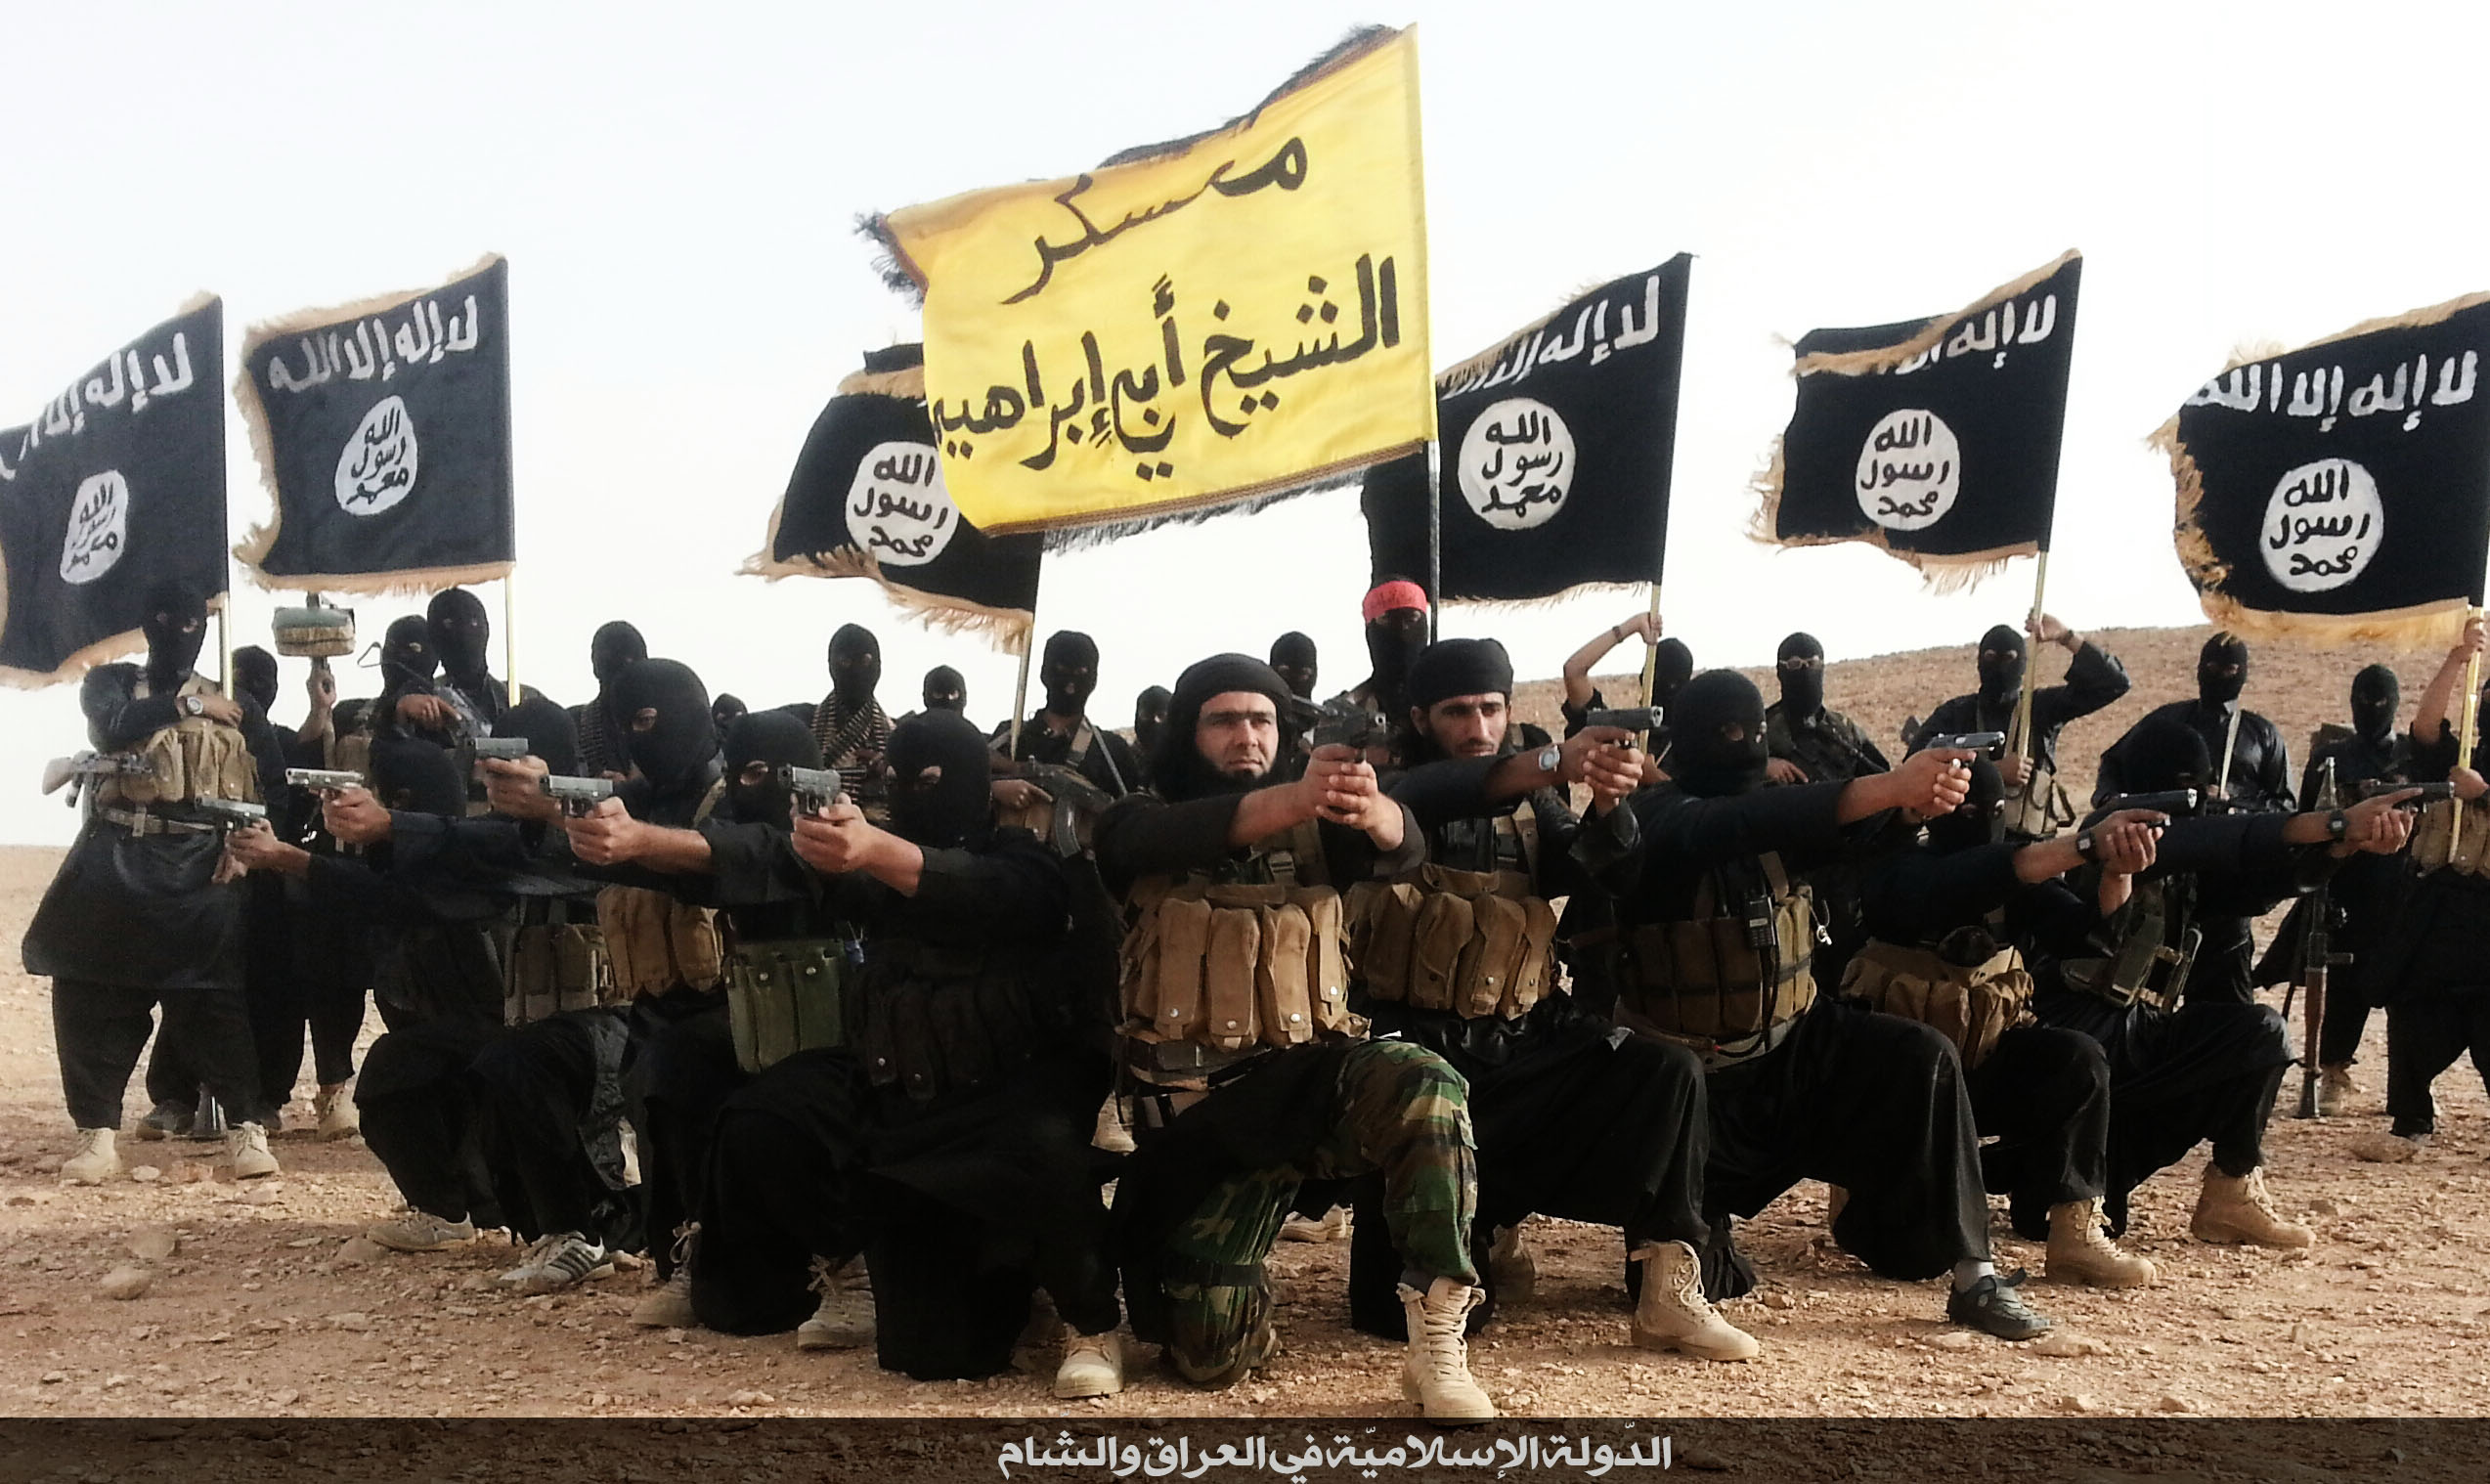 Игил по английски. Флаг ИГИЛ. Исламские террористические группировки.